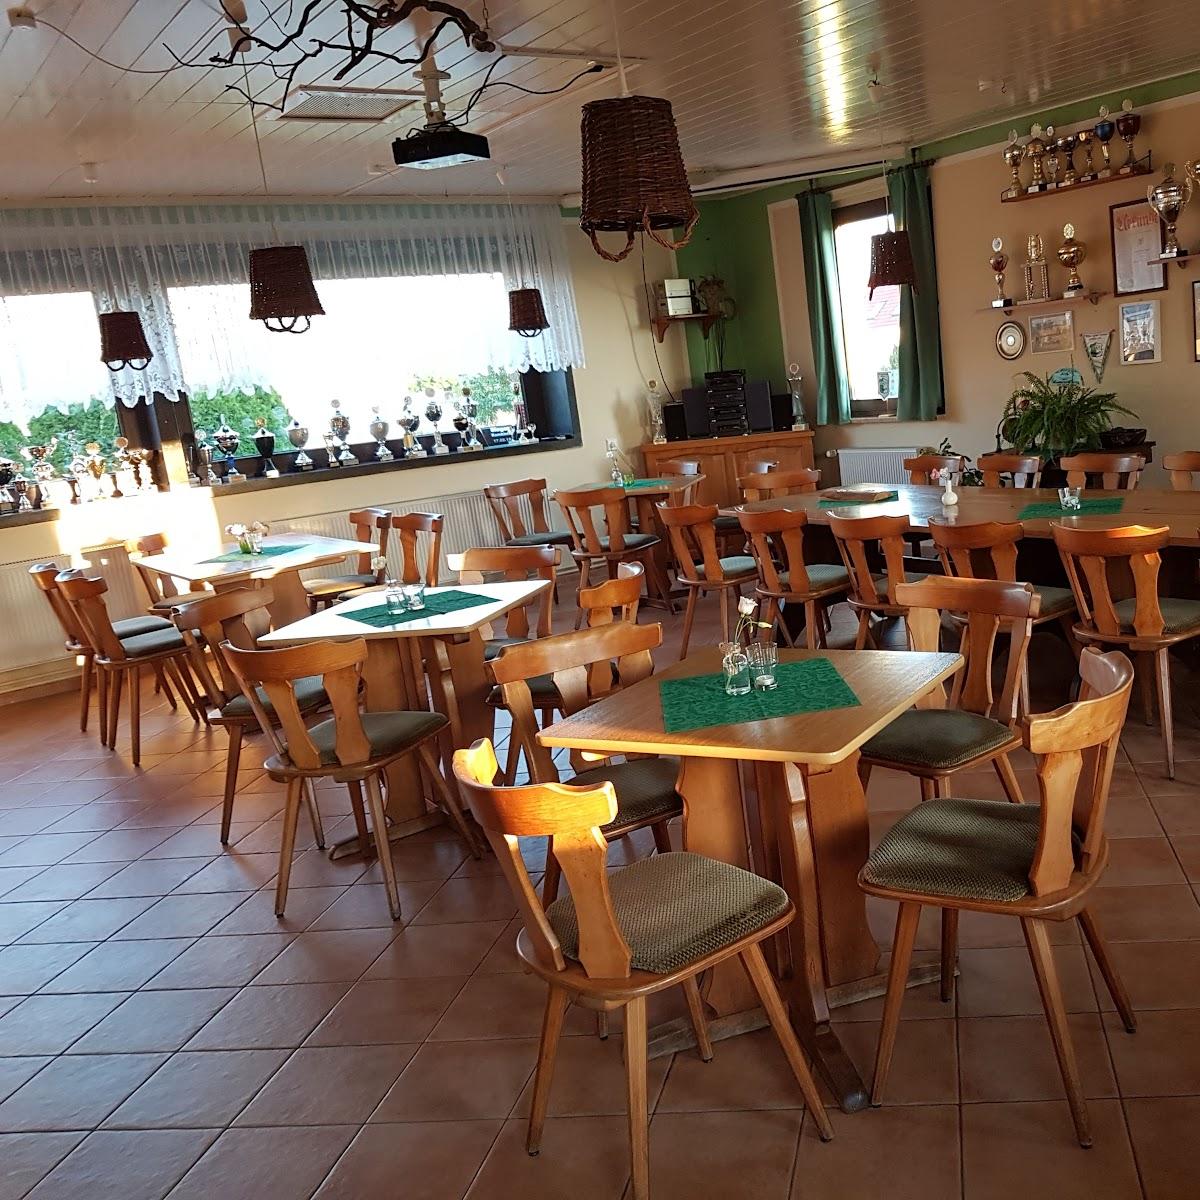 Restaurant "Sportlerklause" in Colbitz